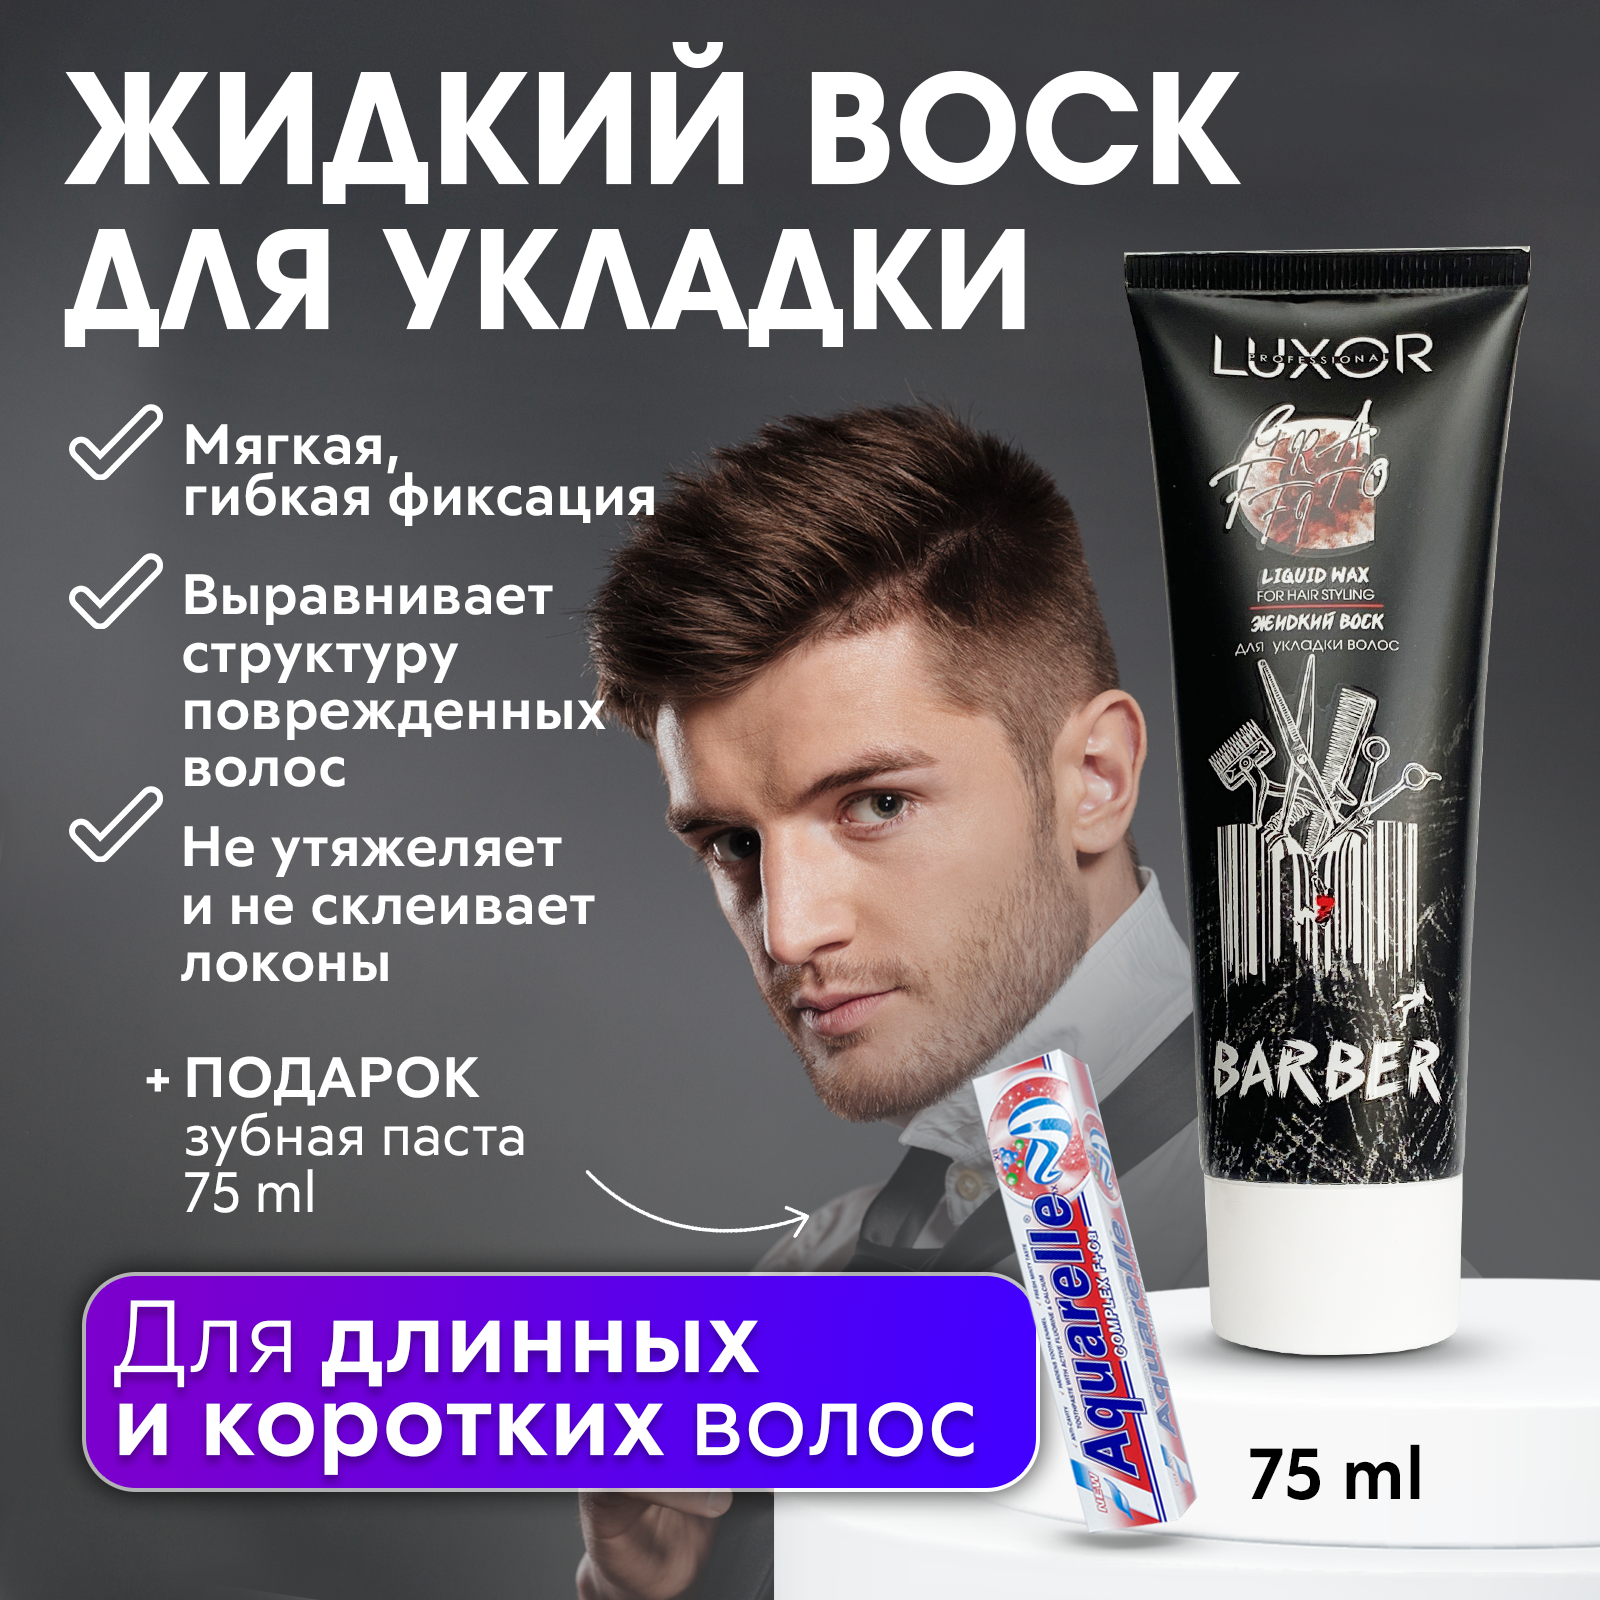 LUXOR PROFESSIONAL / Жидкий воск для укладки волос, текстурирующий 75 мл + В подарок Зубная паста 75 мл!